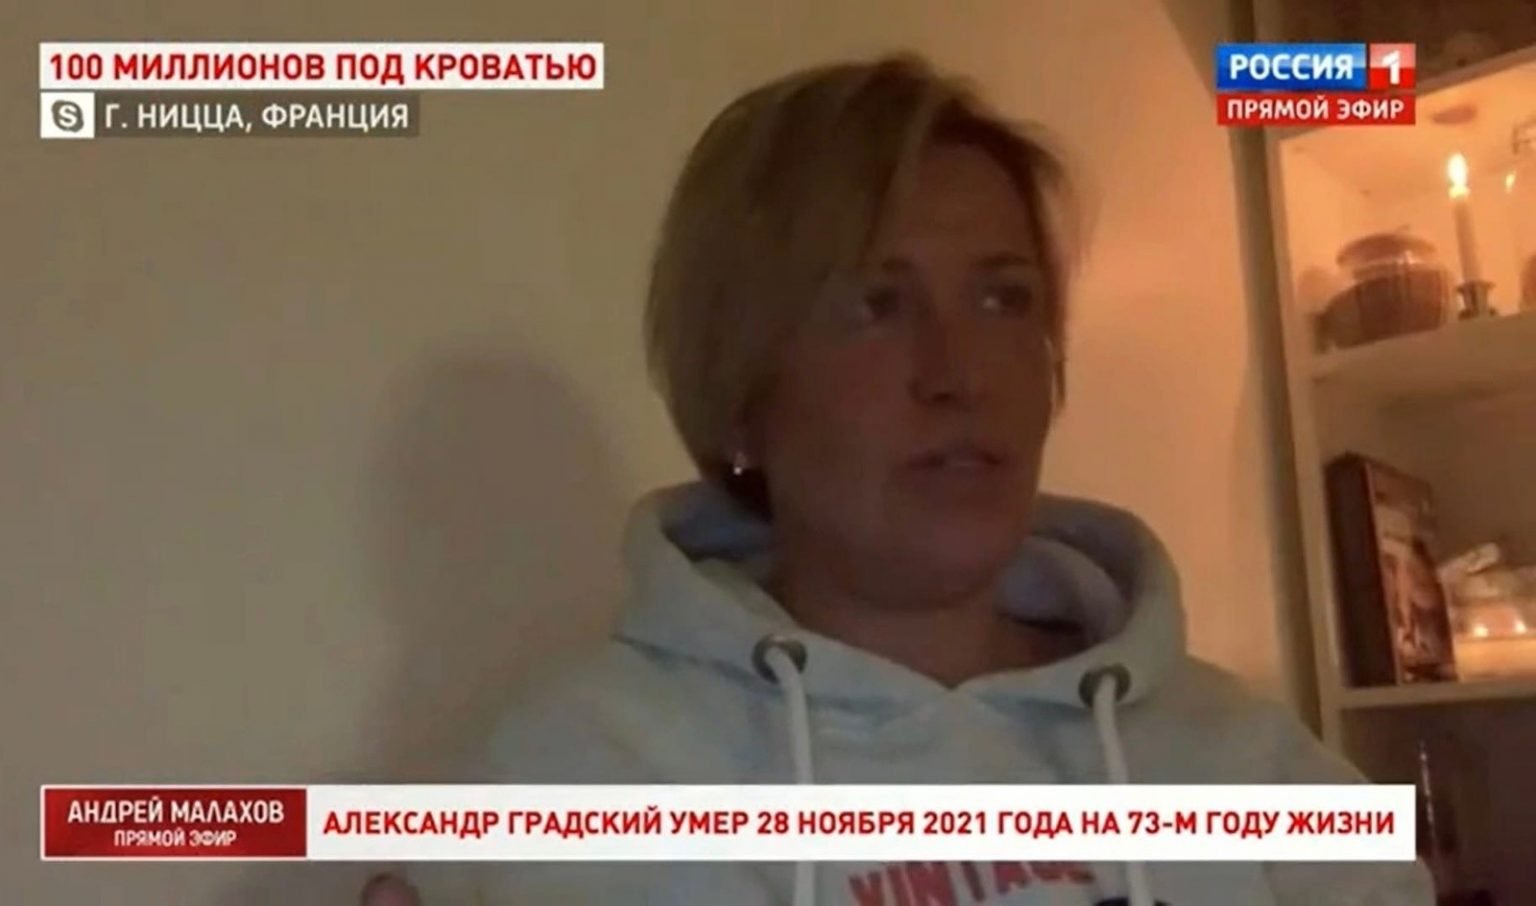 "Заставили больного человека": сестра Александра Градского заявила, что его брак с Мариной Коташенко недействителен